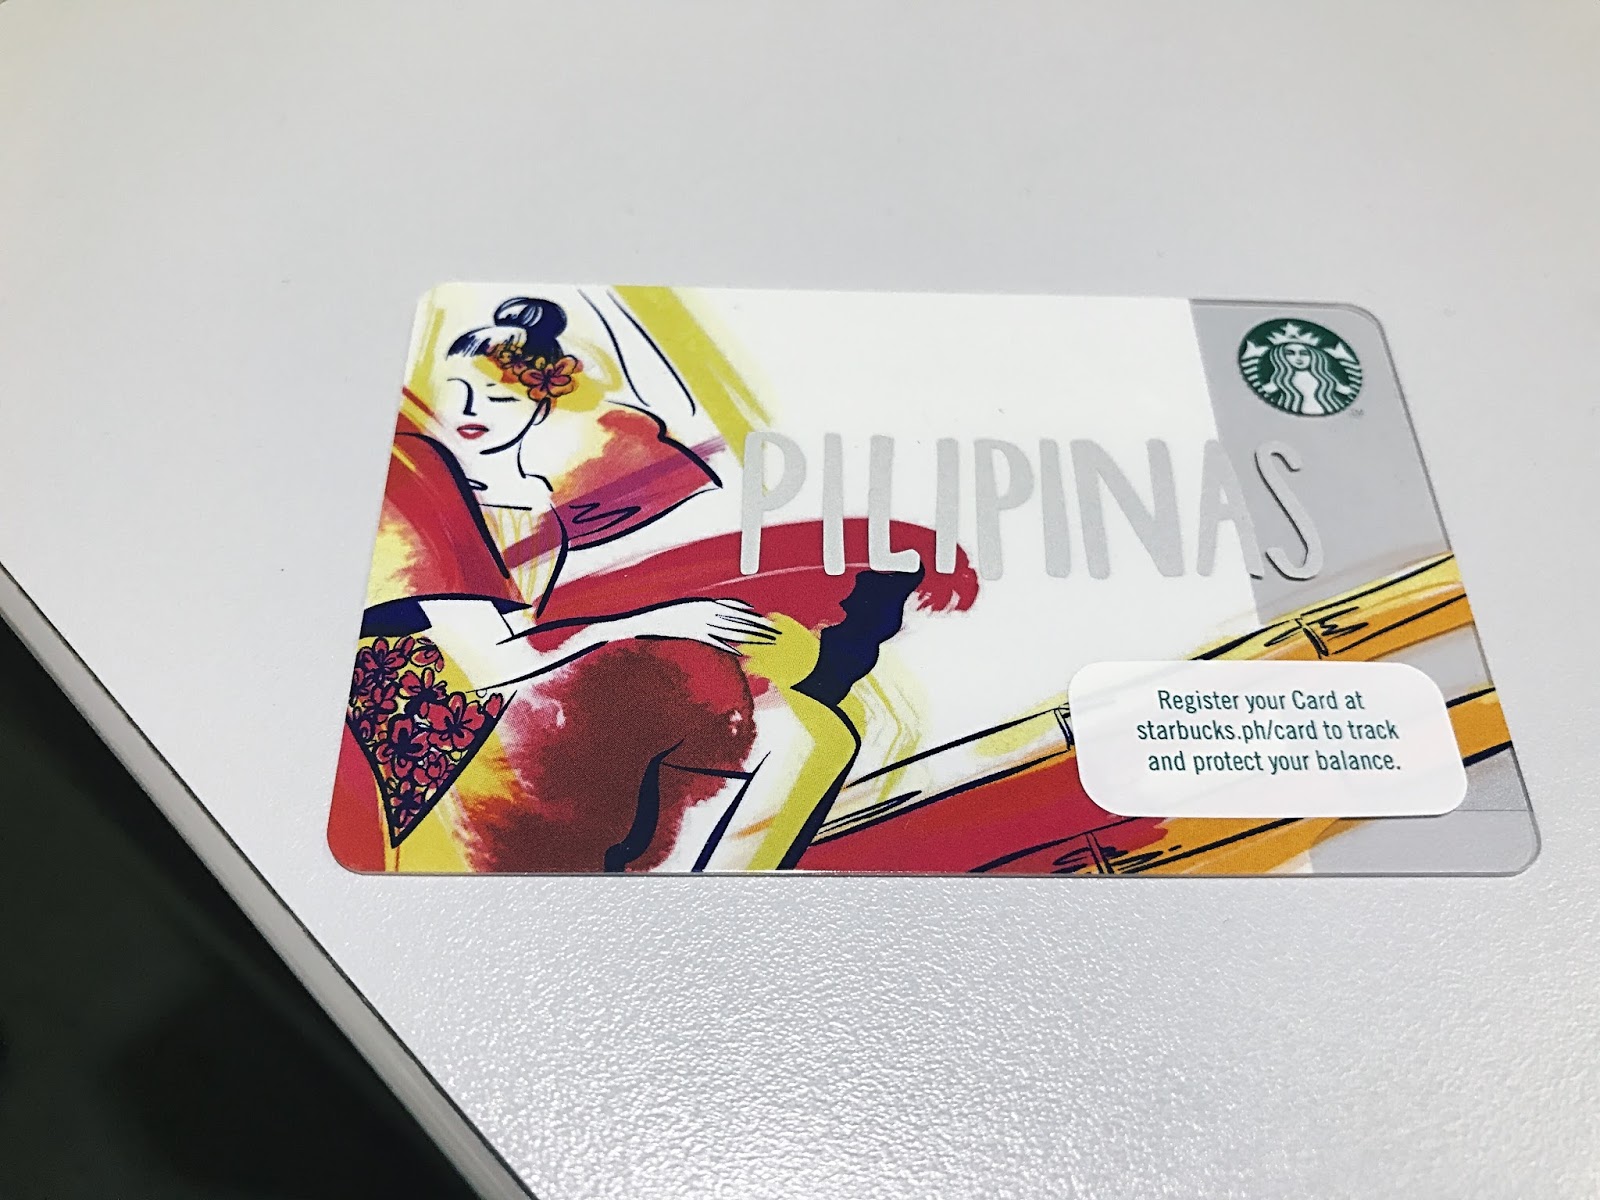 2017 Starbucks Pilipinas Card